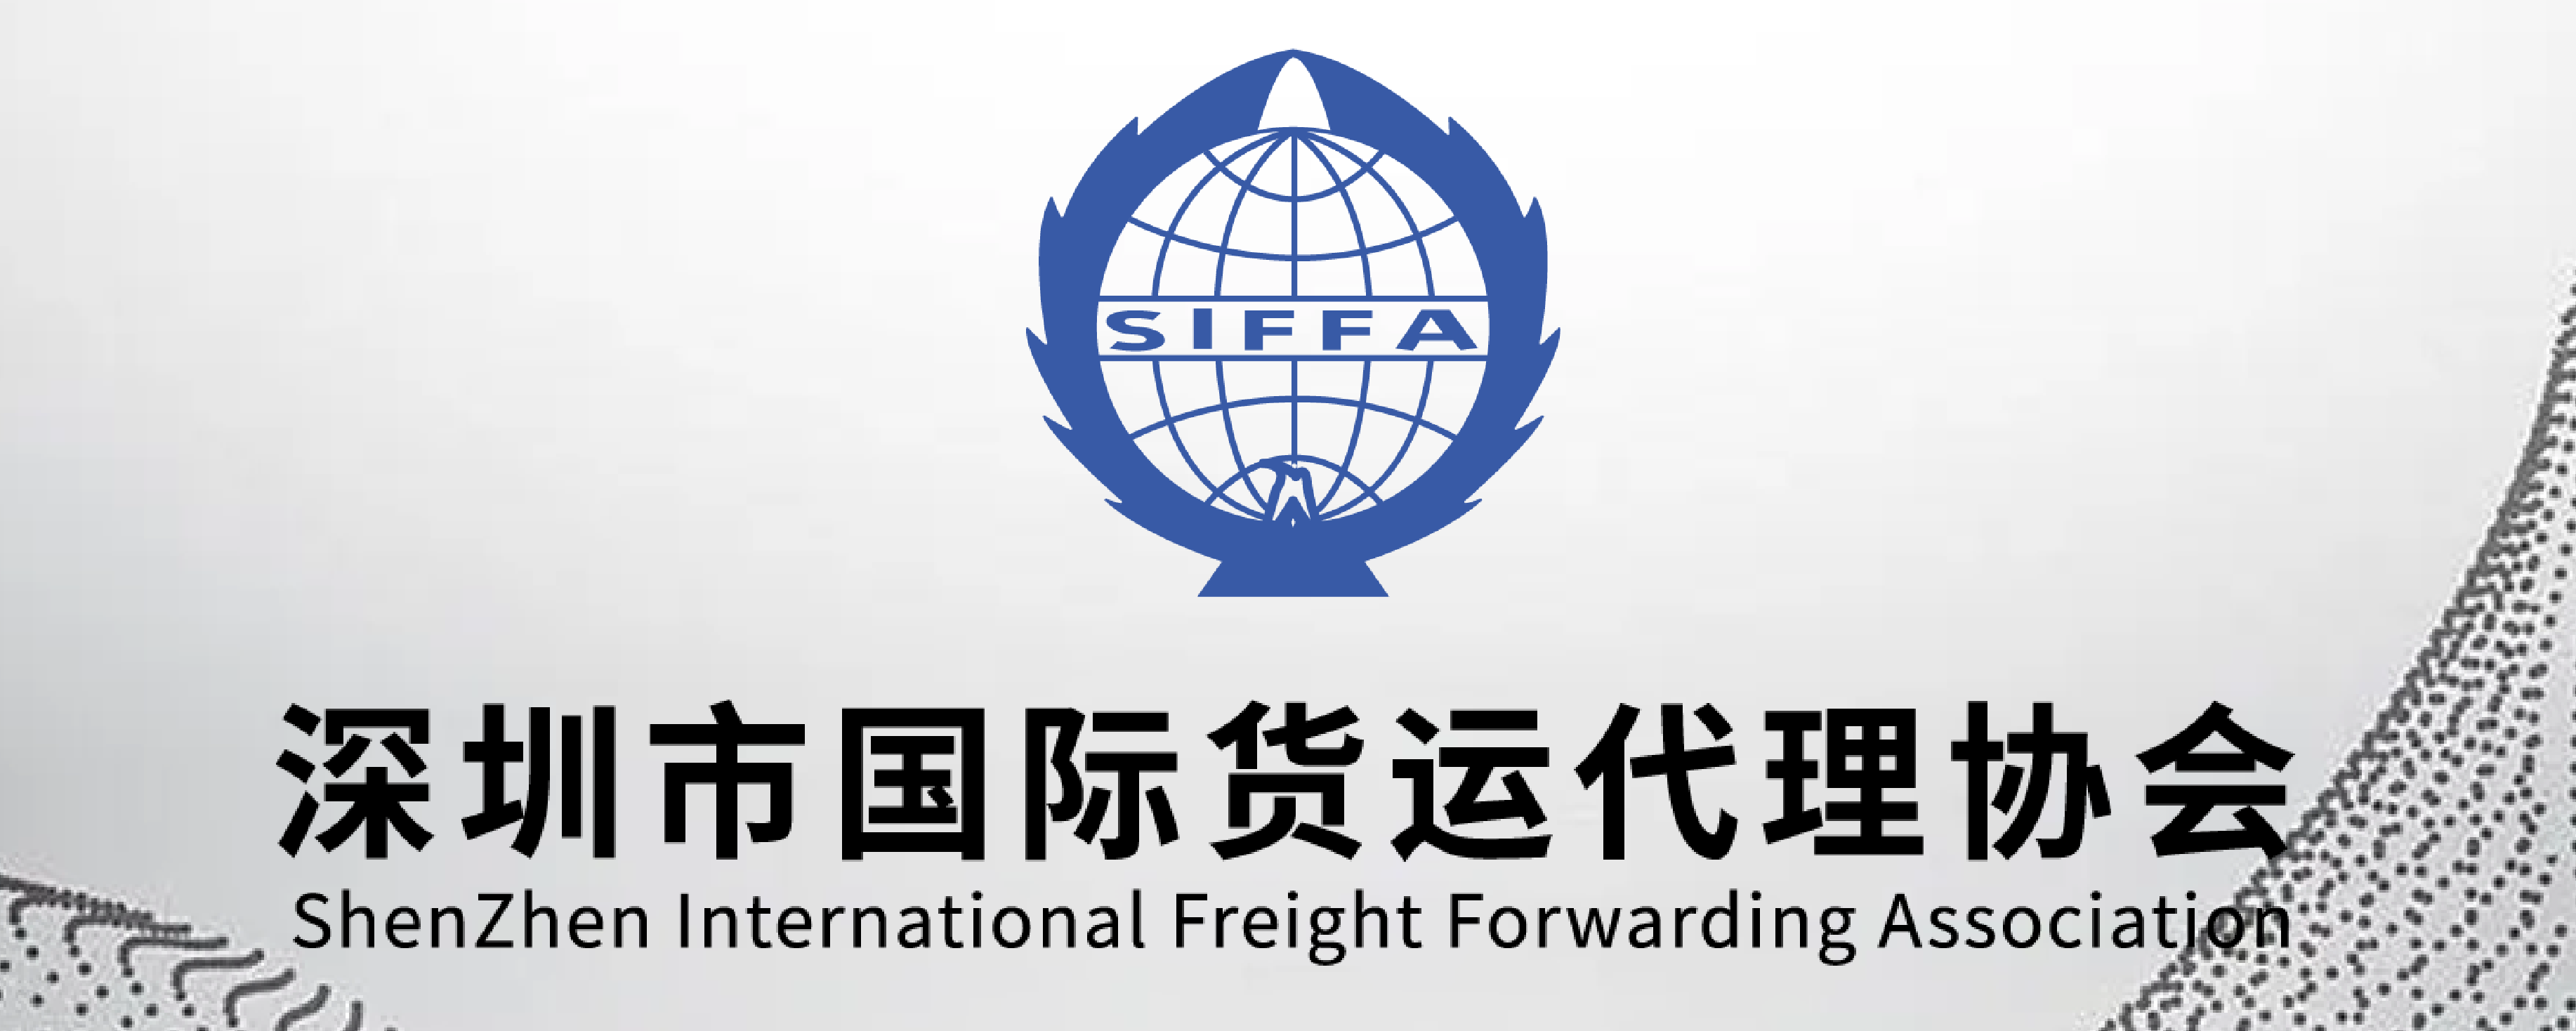 深圳货代协会最新动态：2022年12月全国港口货物、集装箱吞吐量